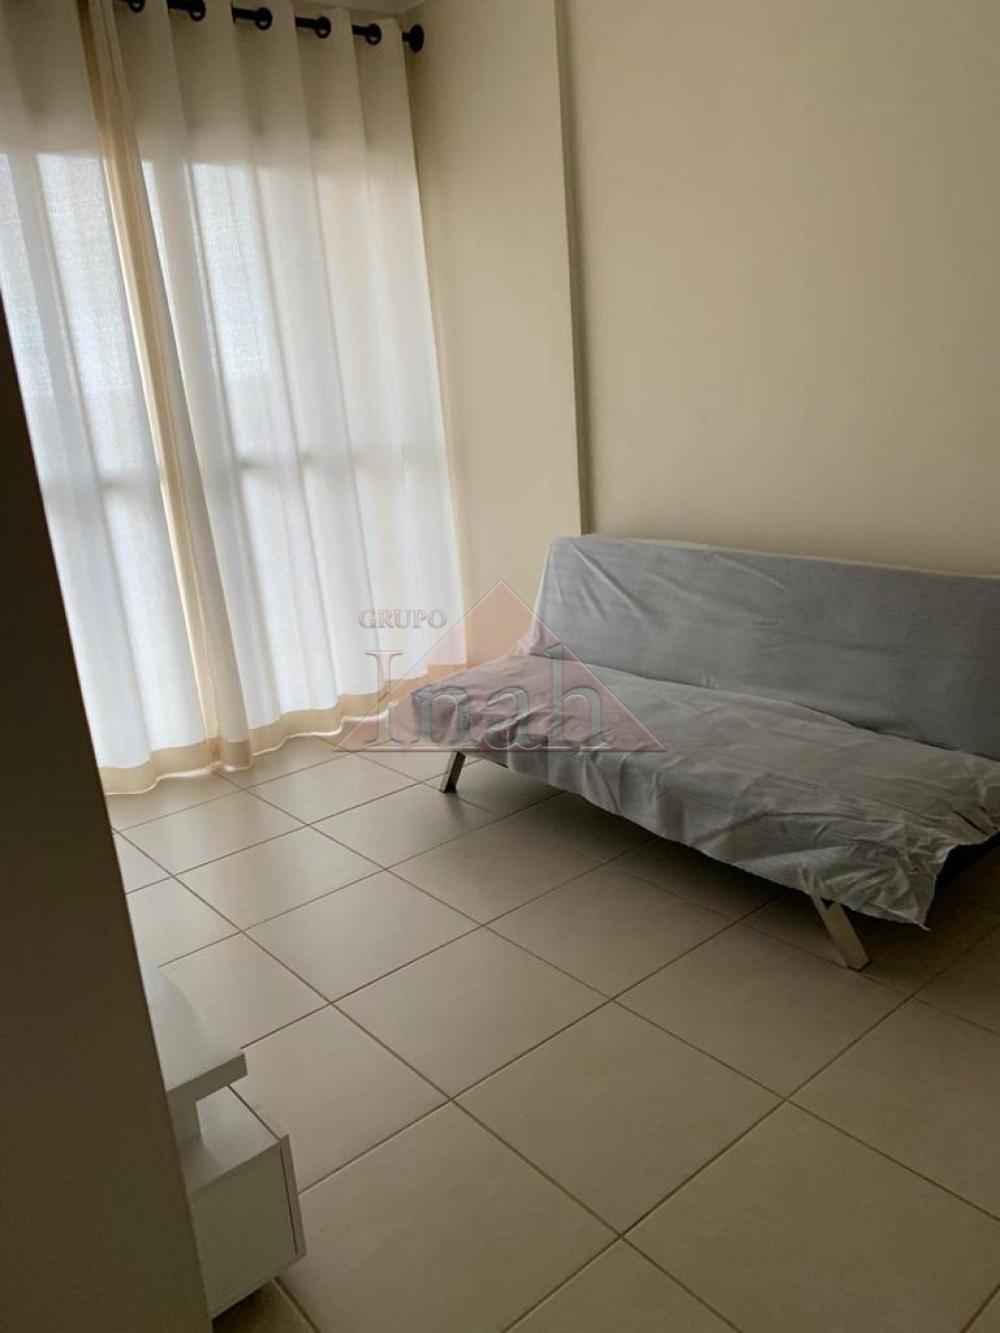 Alugar Apartamentos / Apartamento em Ribeirão Preto R$ 1.300,00 - Foto 9